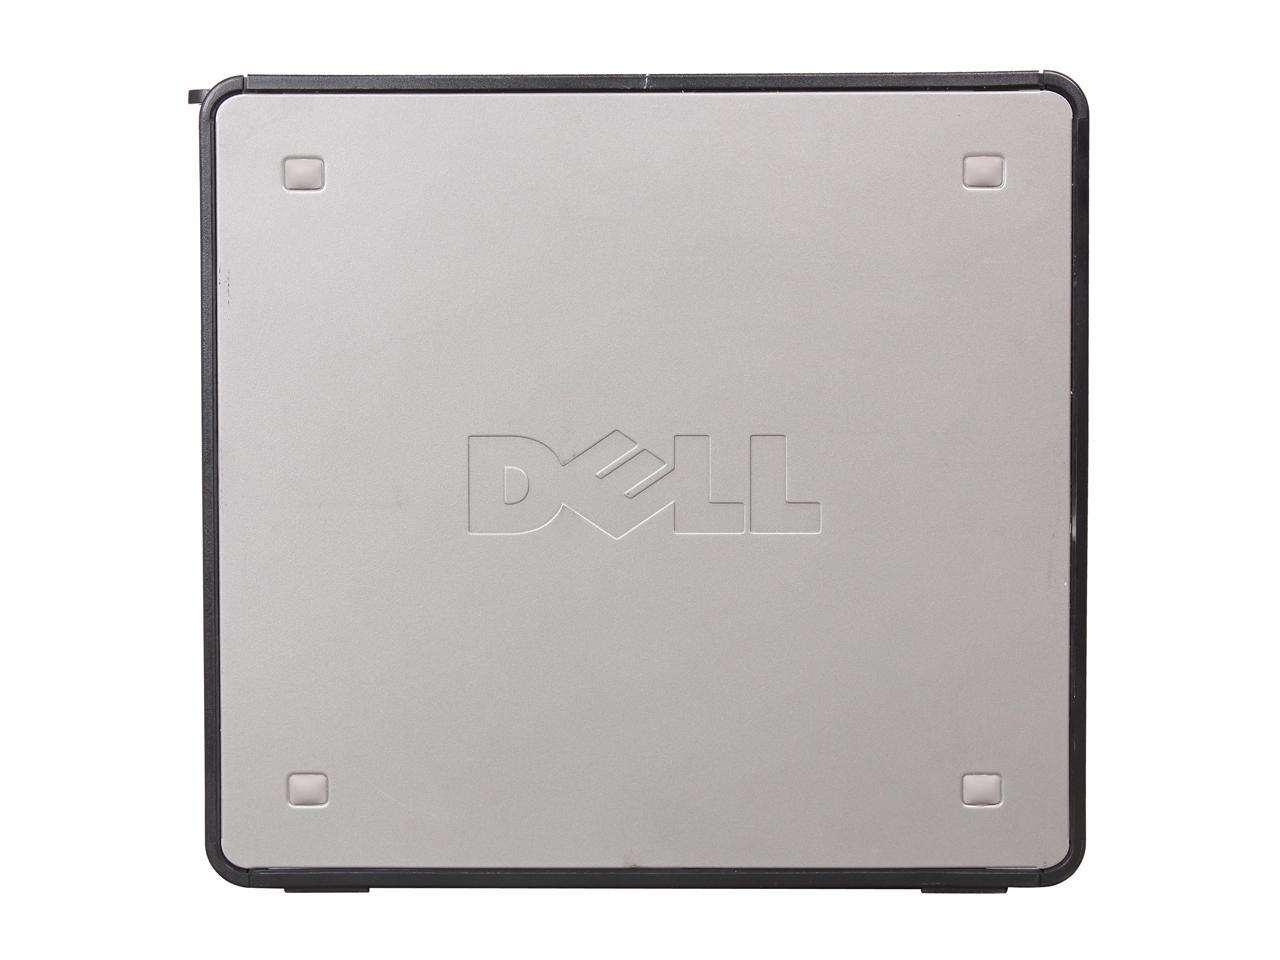 DELL Desktop PC OptiPlex 755 DT Core 2 Duo 2.3GHz 2GB 80GB HDD Windows 7 Home Premium 32-Bit 18 Months Warranty